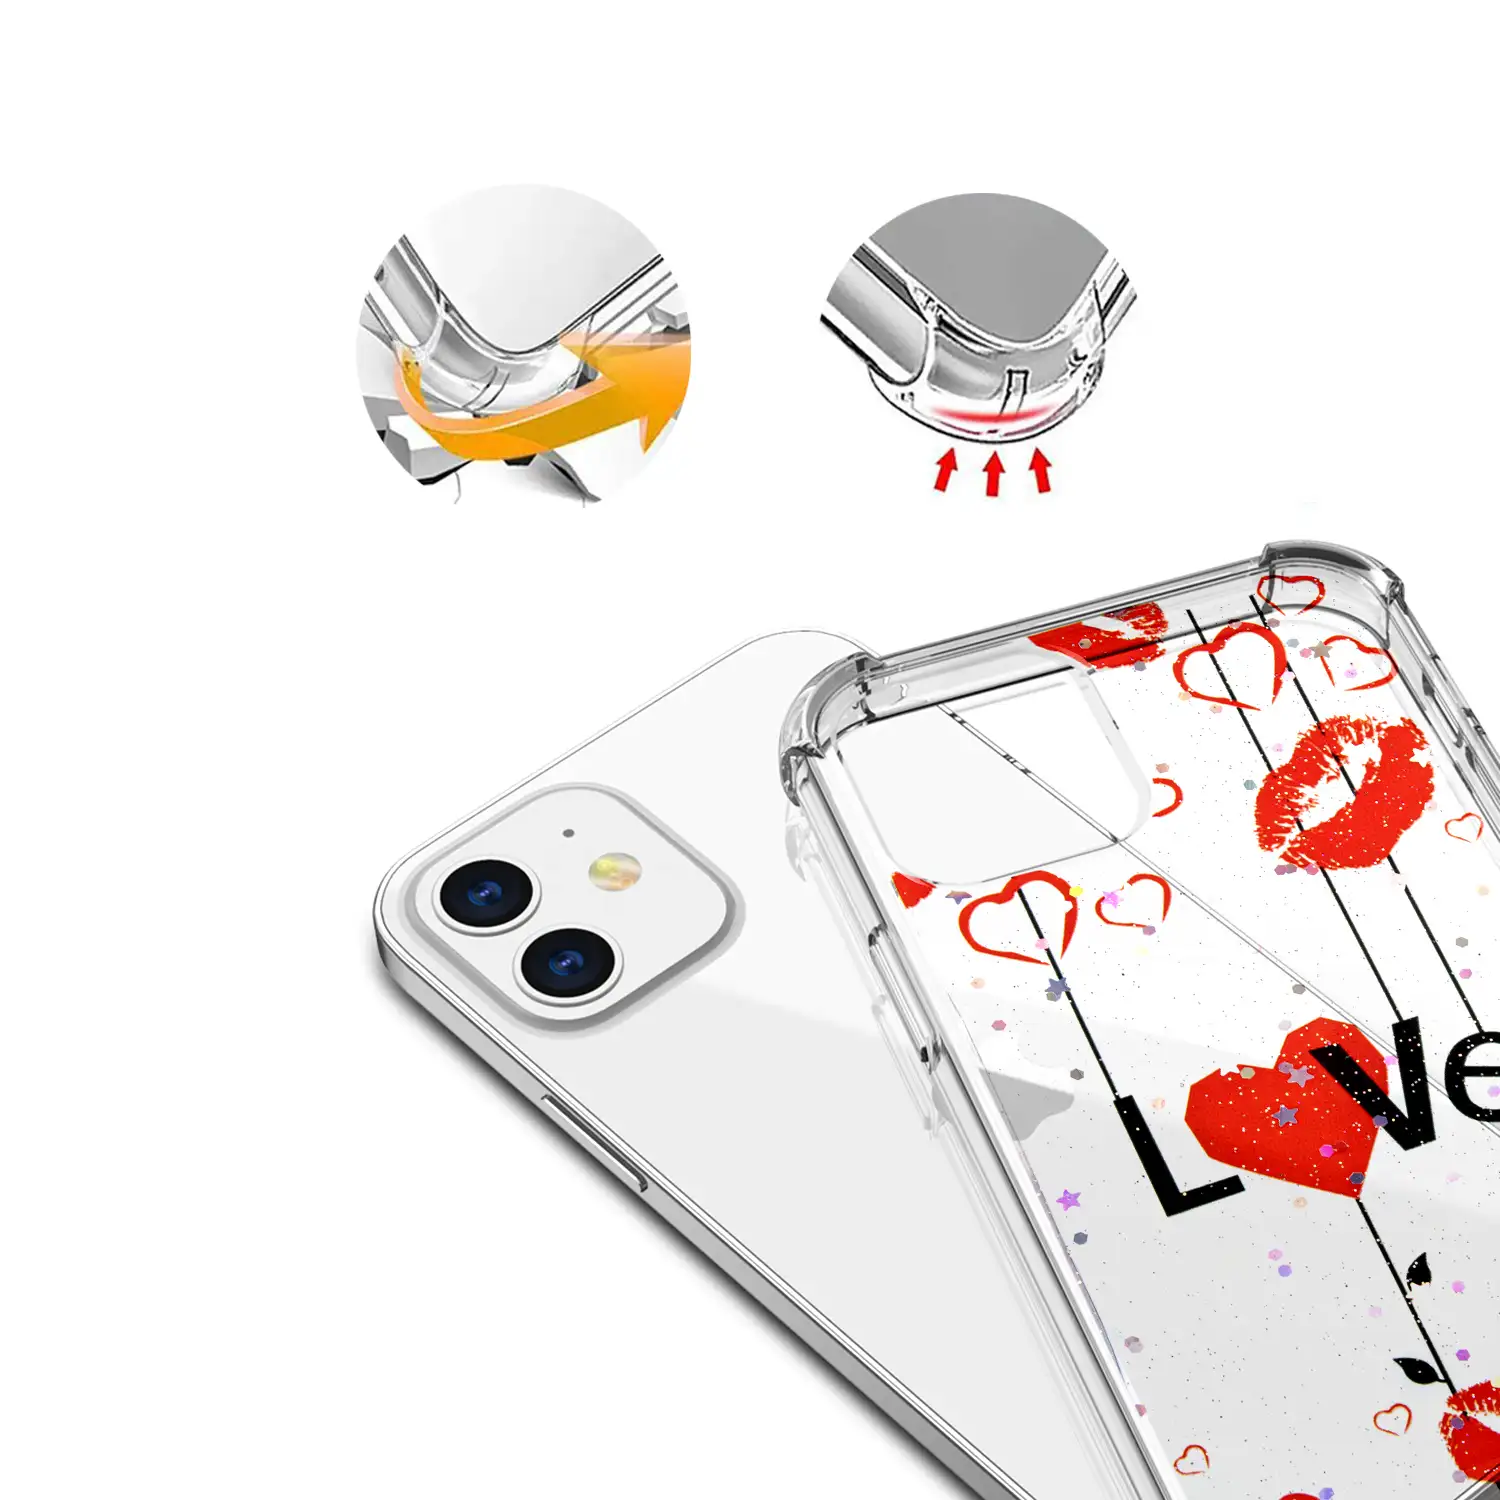 	Carcasa de TPU de alta protección con diseño love para iPhone 12 Mini